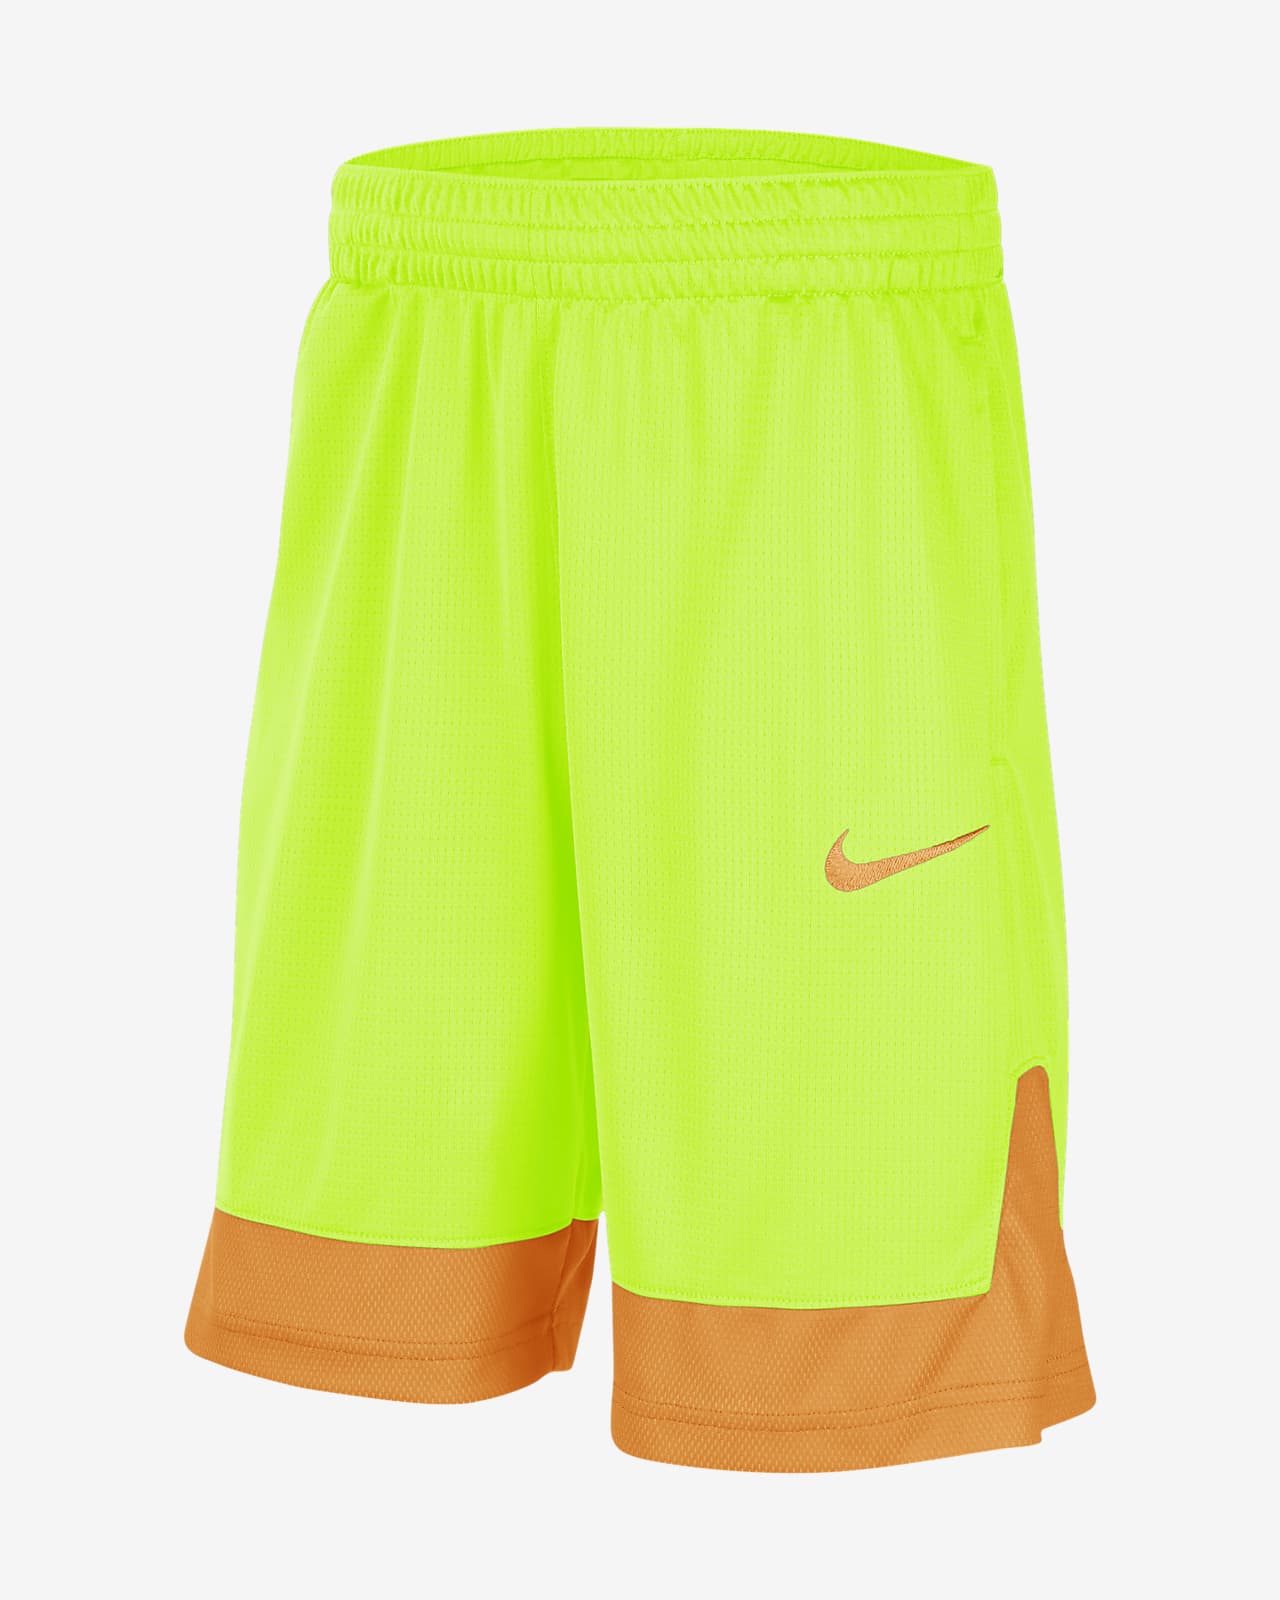 nike sequalizer basketball shorts